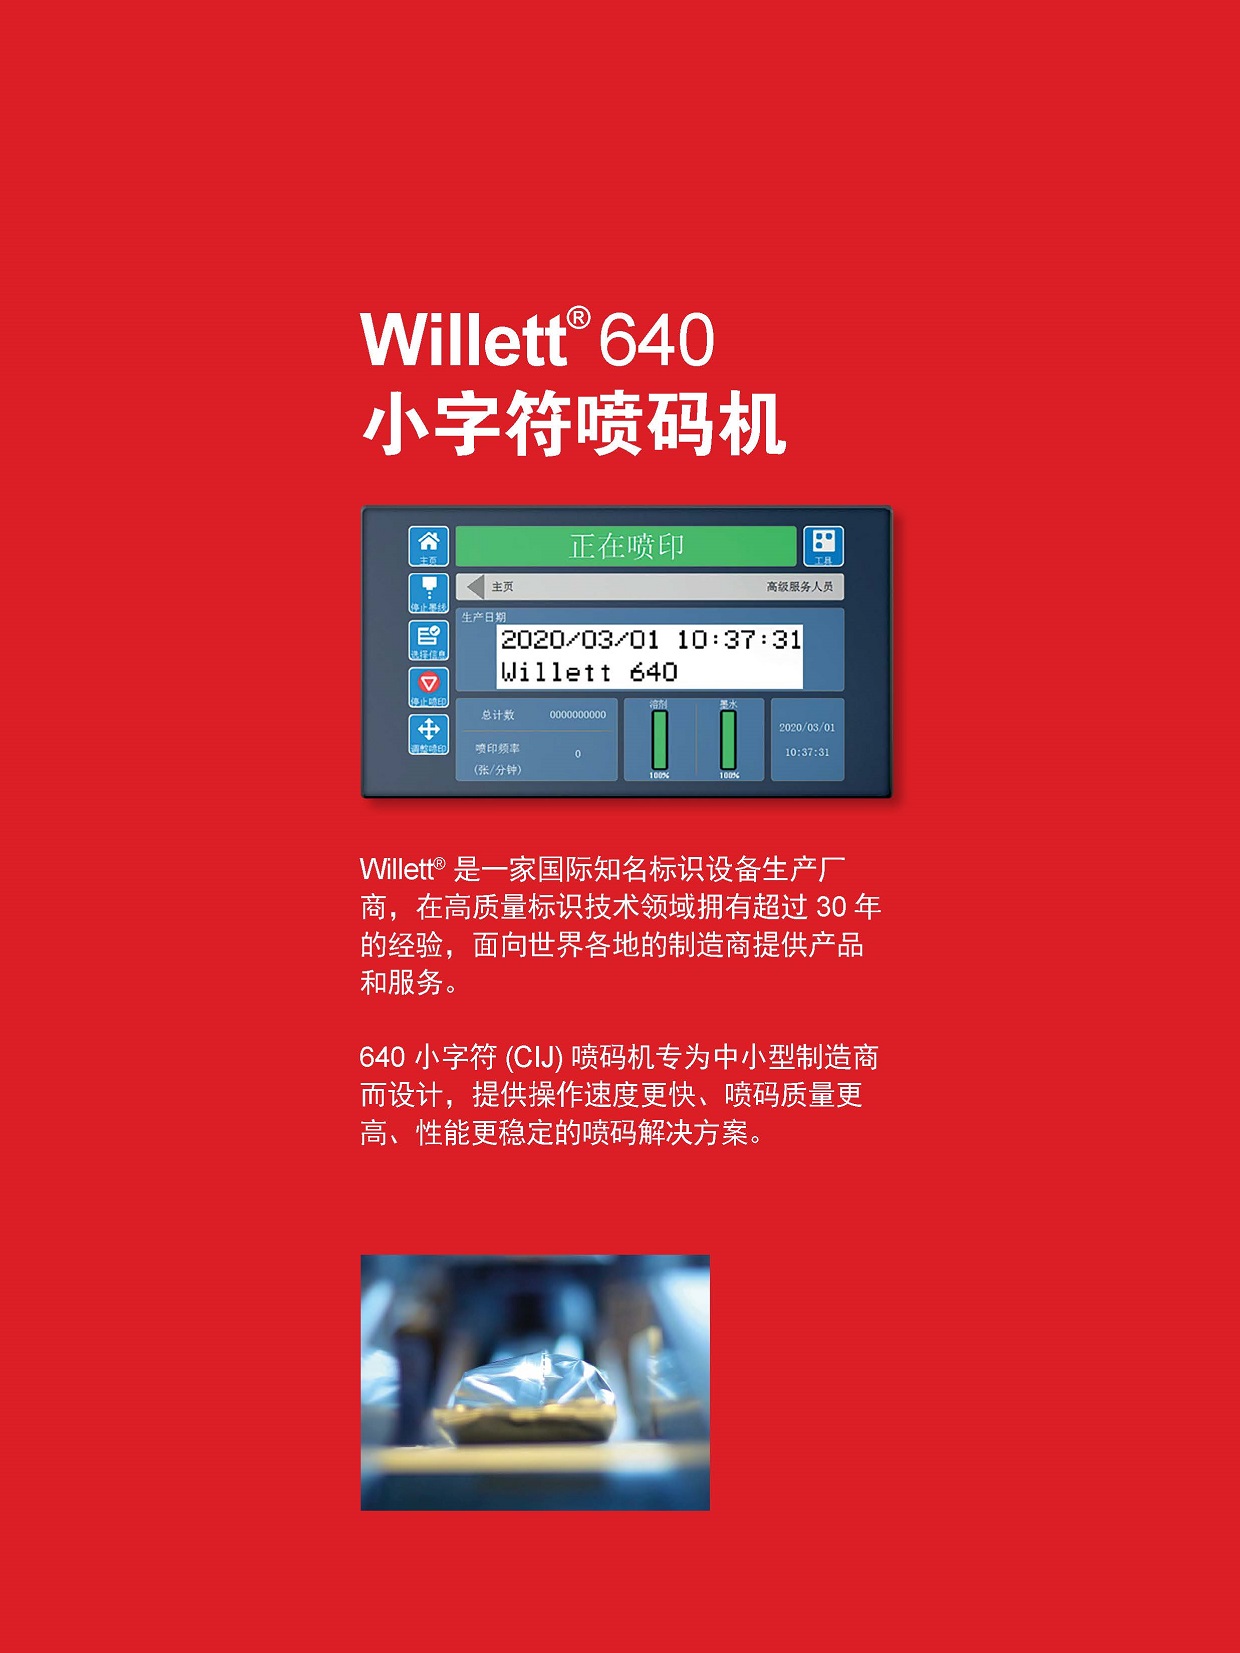 威利640产品手册 中文_页面_2.jpg